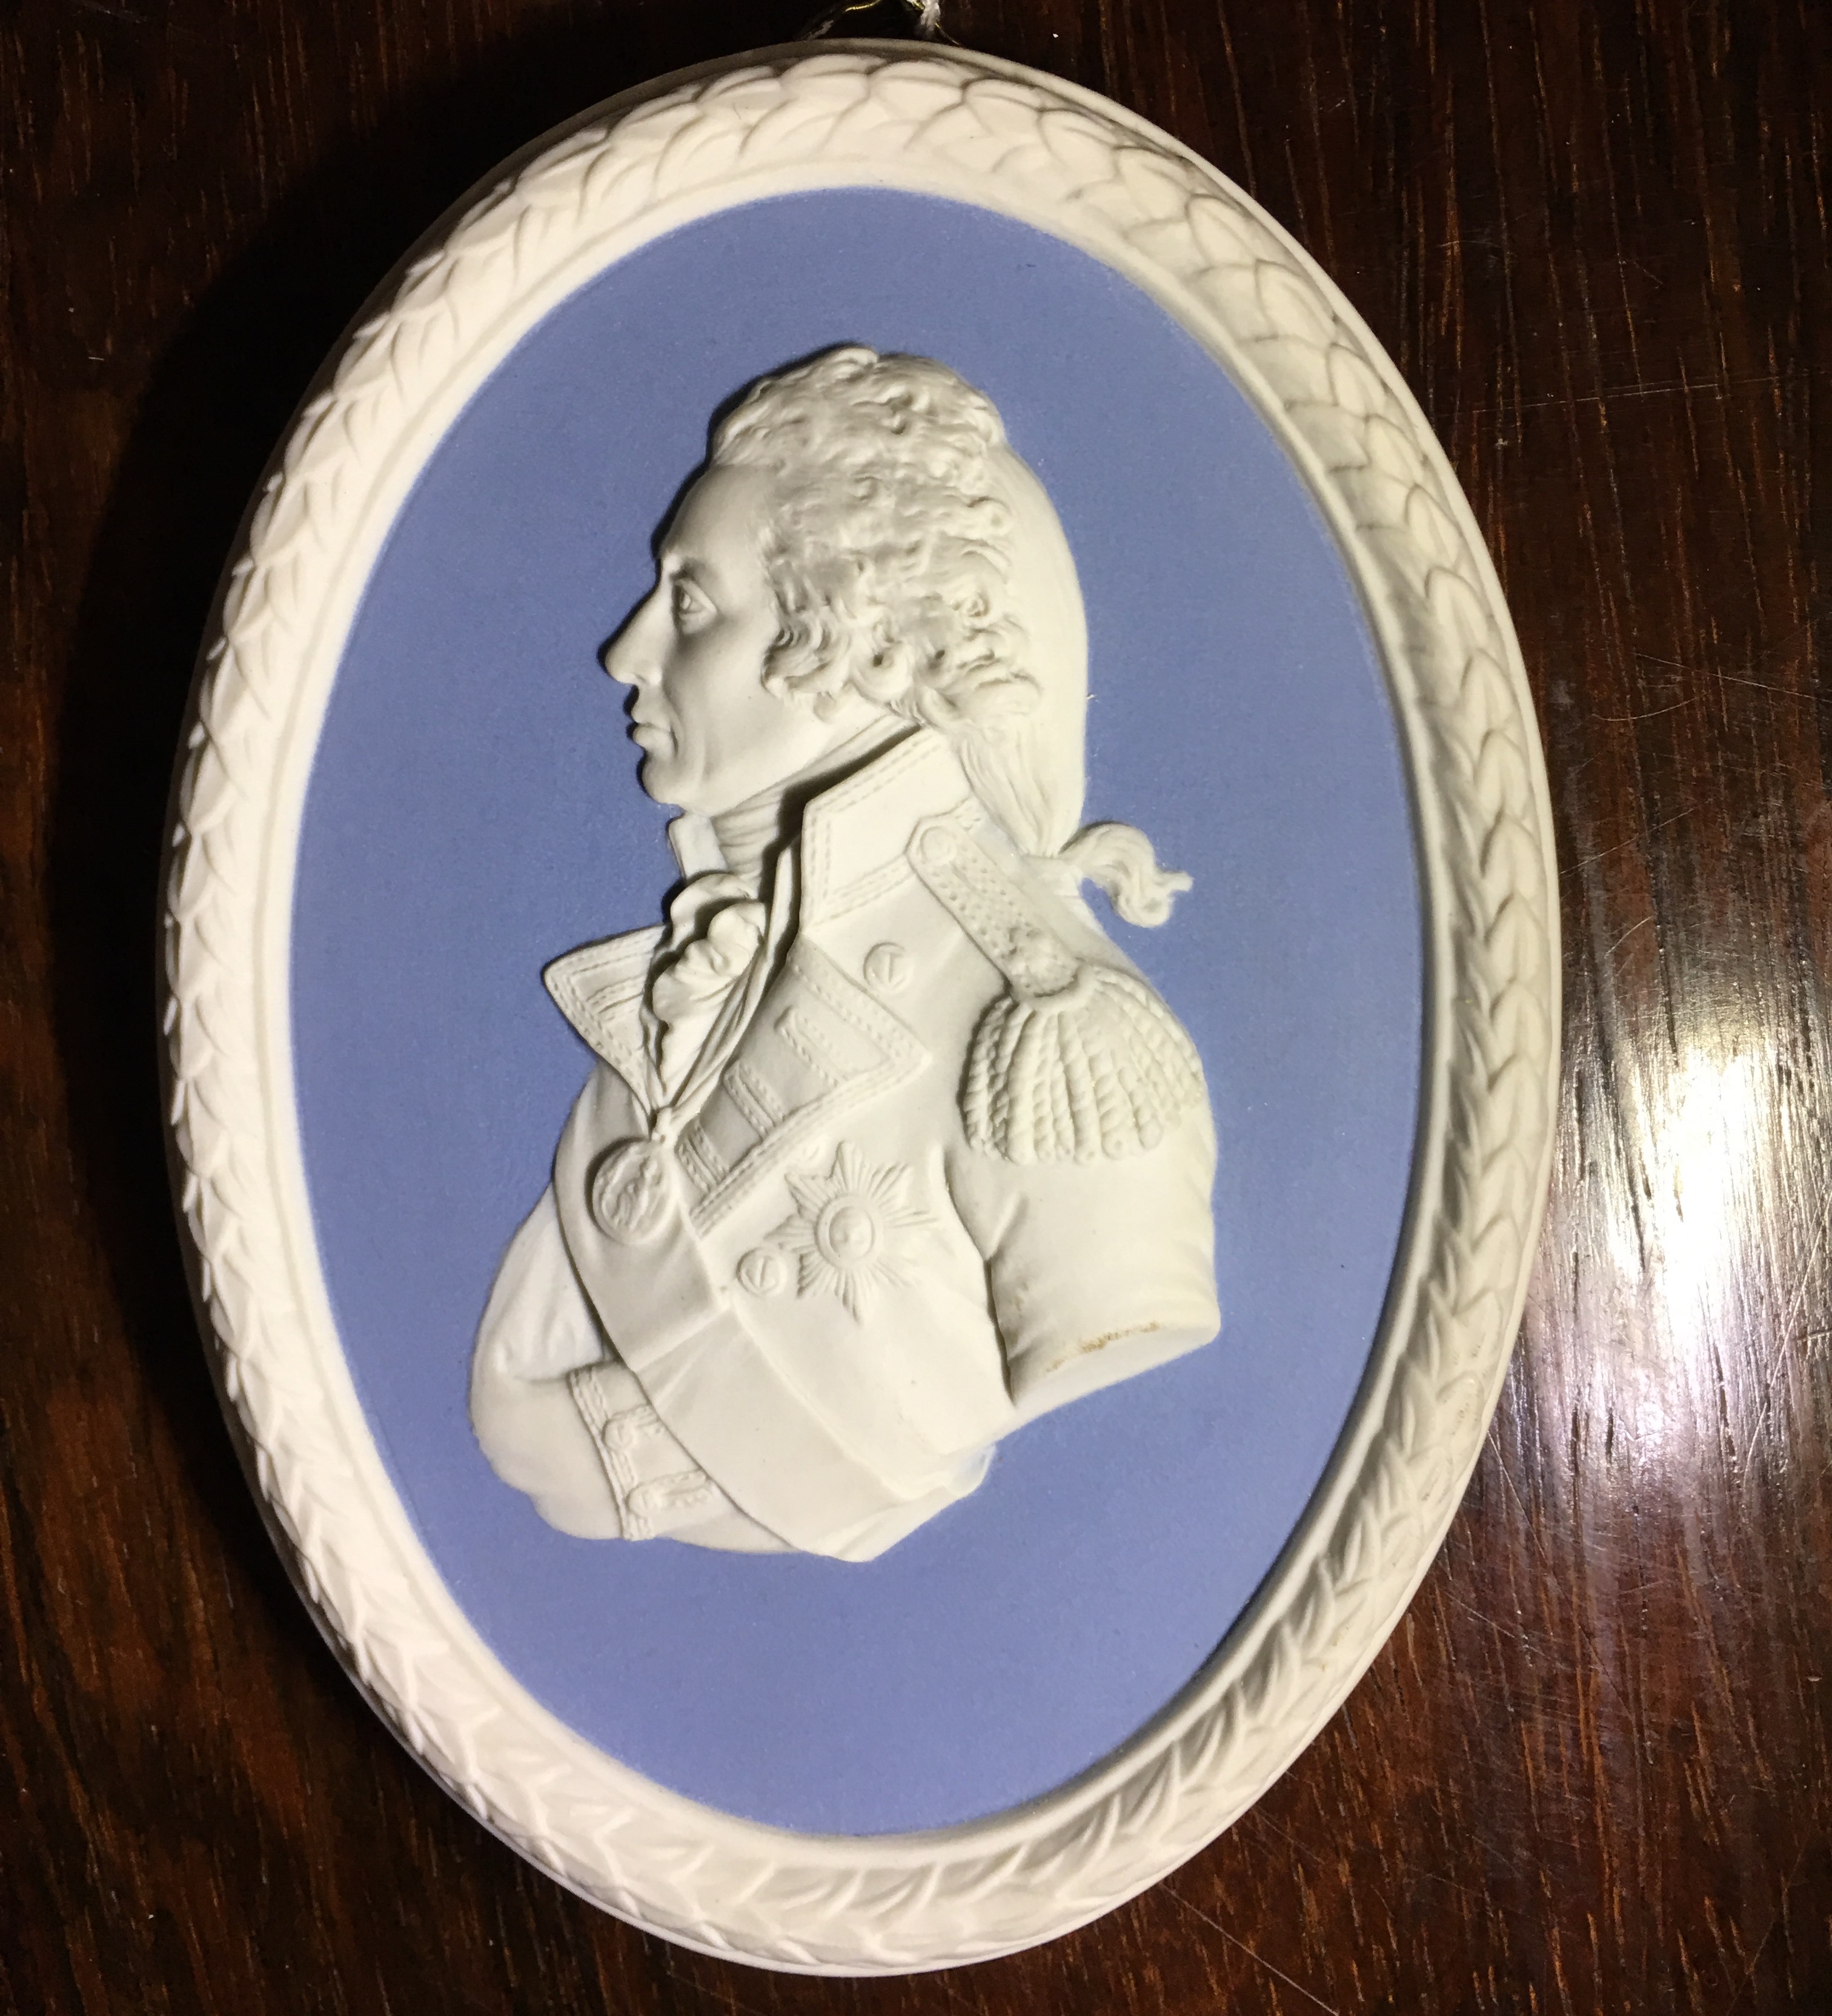 Wedgwood blue jasper portrait medallion, ‘Nelson’, 20th